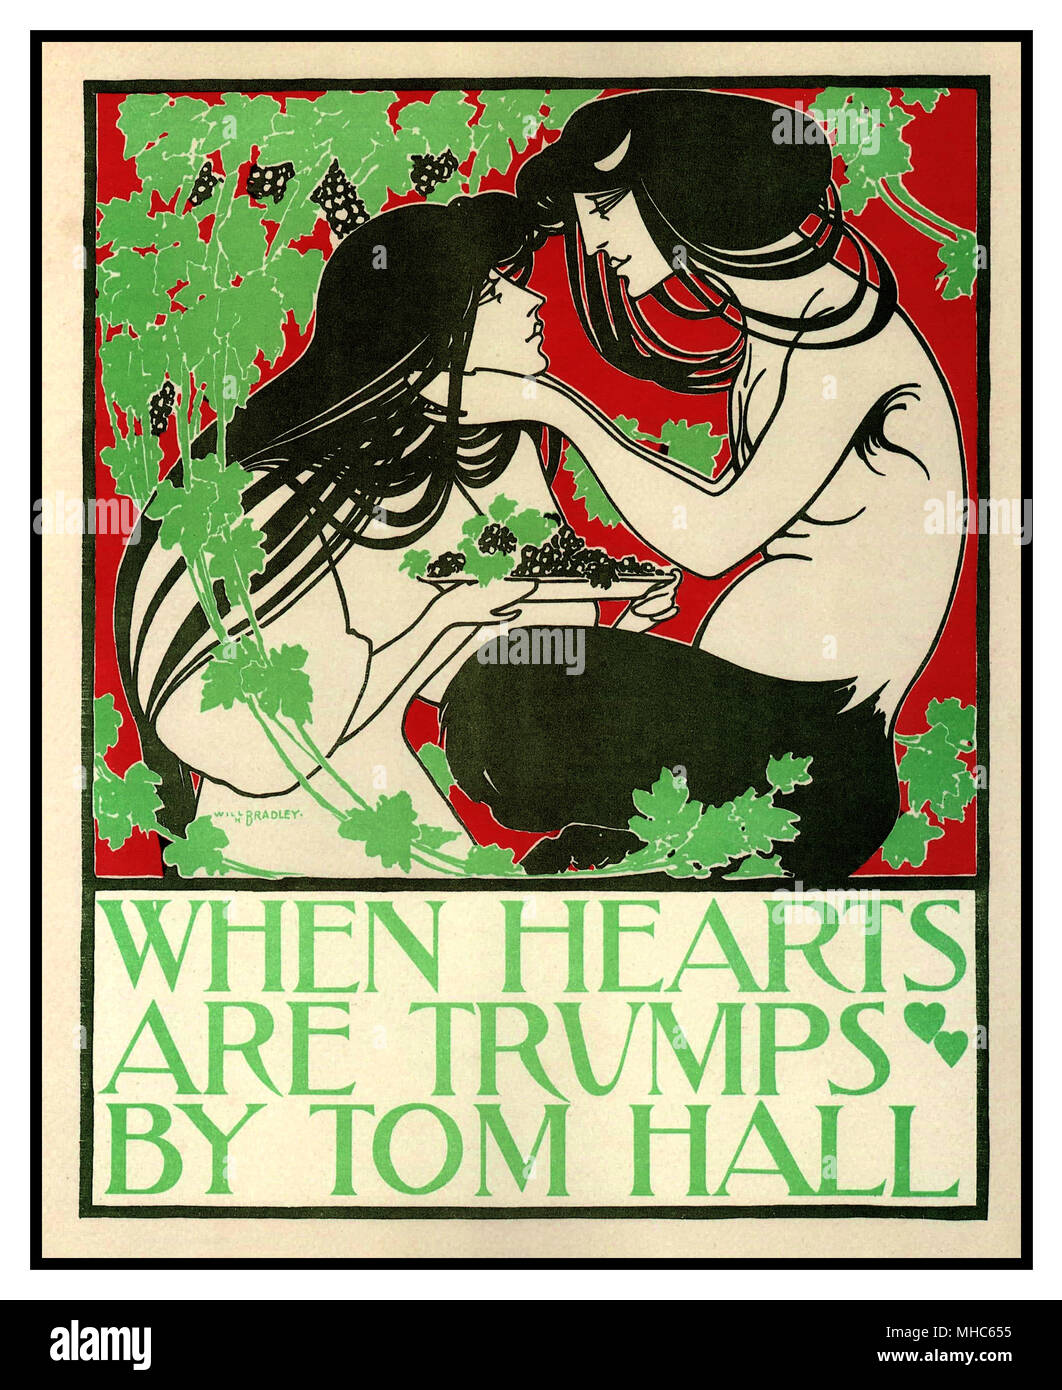 Wenn Herz ist Trumpf, Jugendstil Poster von Will Bradley, 1894 einen Vintage Jugendstil Poster für das Buch beim Herz ist Trumpf von Tom Hall geschrieben. Die hohe Auflösung im Jugendstil Poster wurde von William Henry Bradley 1894 dargestellt. Stockfoto